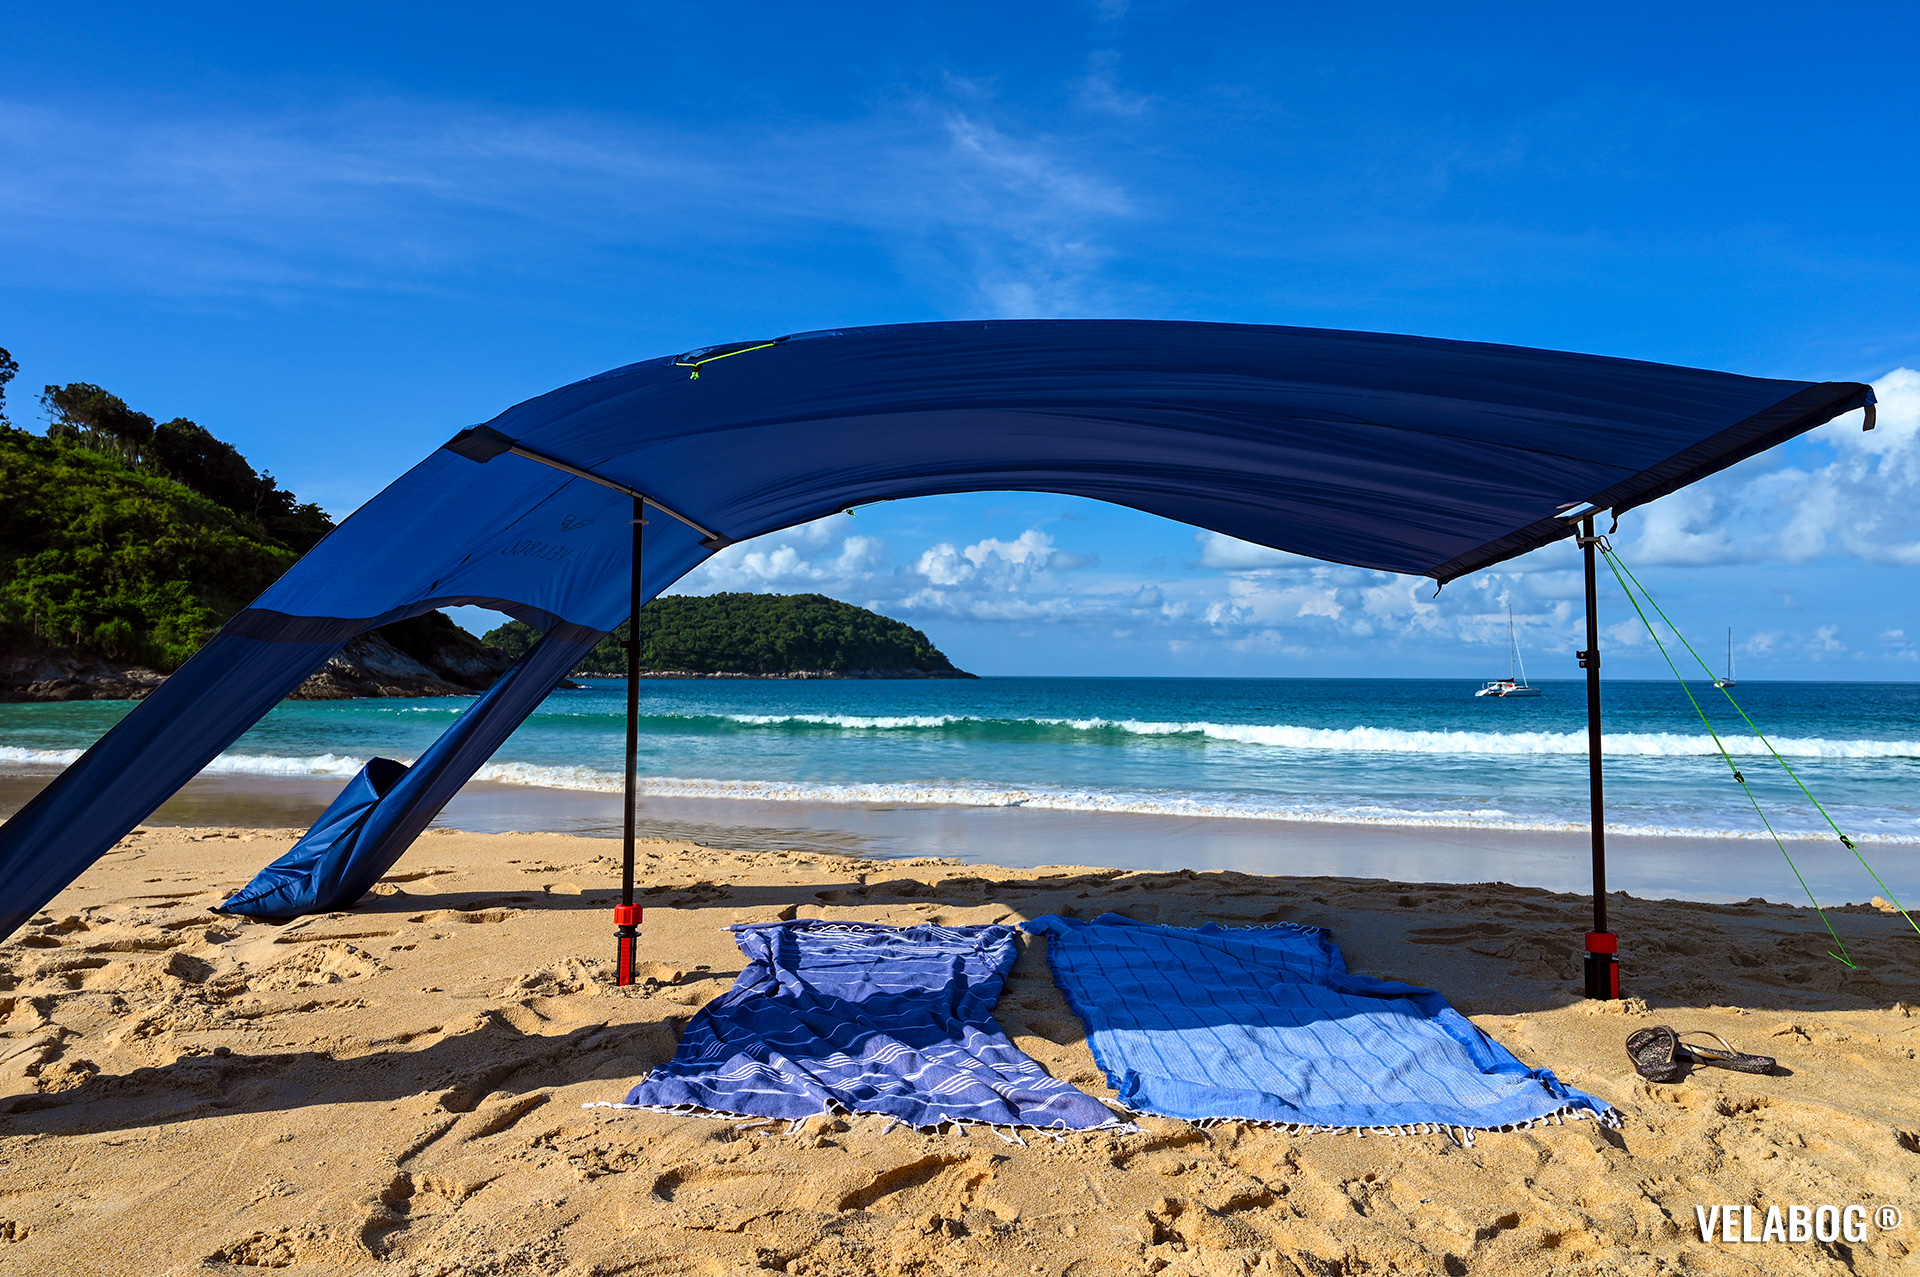 Blu notte tenda spiaggia vela da sole Velabog Breeze. Protezione dal sole sulla spiaggia dall'eccellente stabilità con qualsiasi tipo di vento.